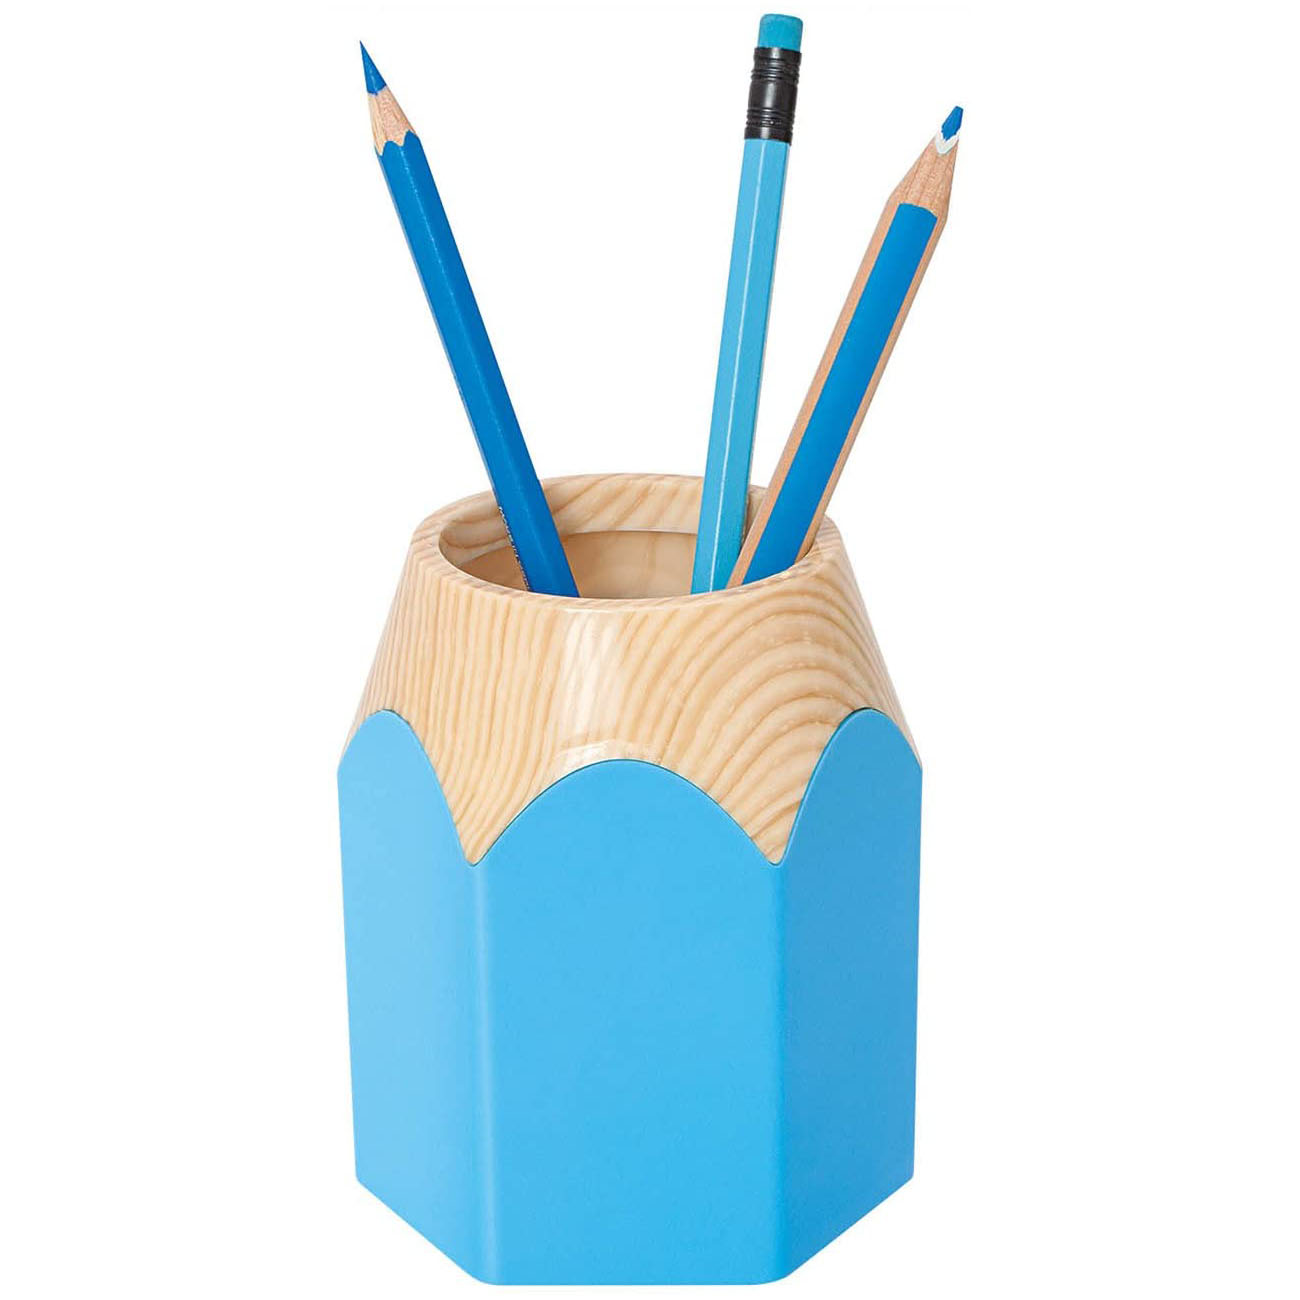 WEDO Stiftekcher PENCIL, aus Kunststoff, hellblau